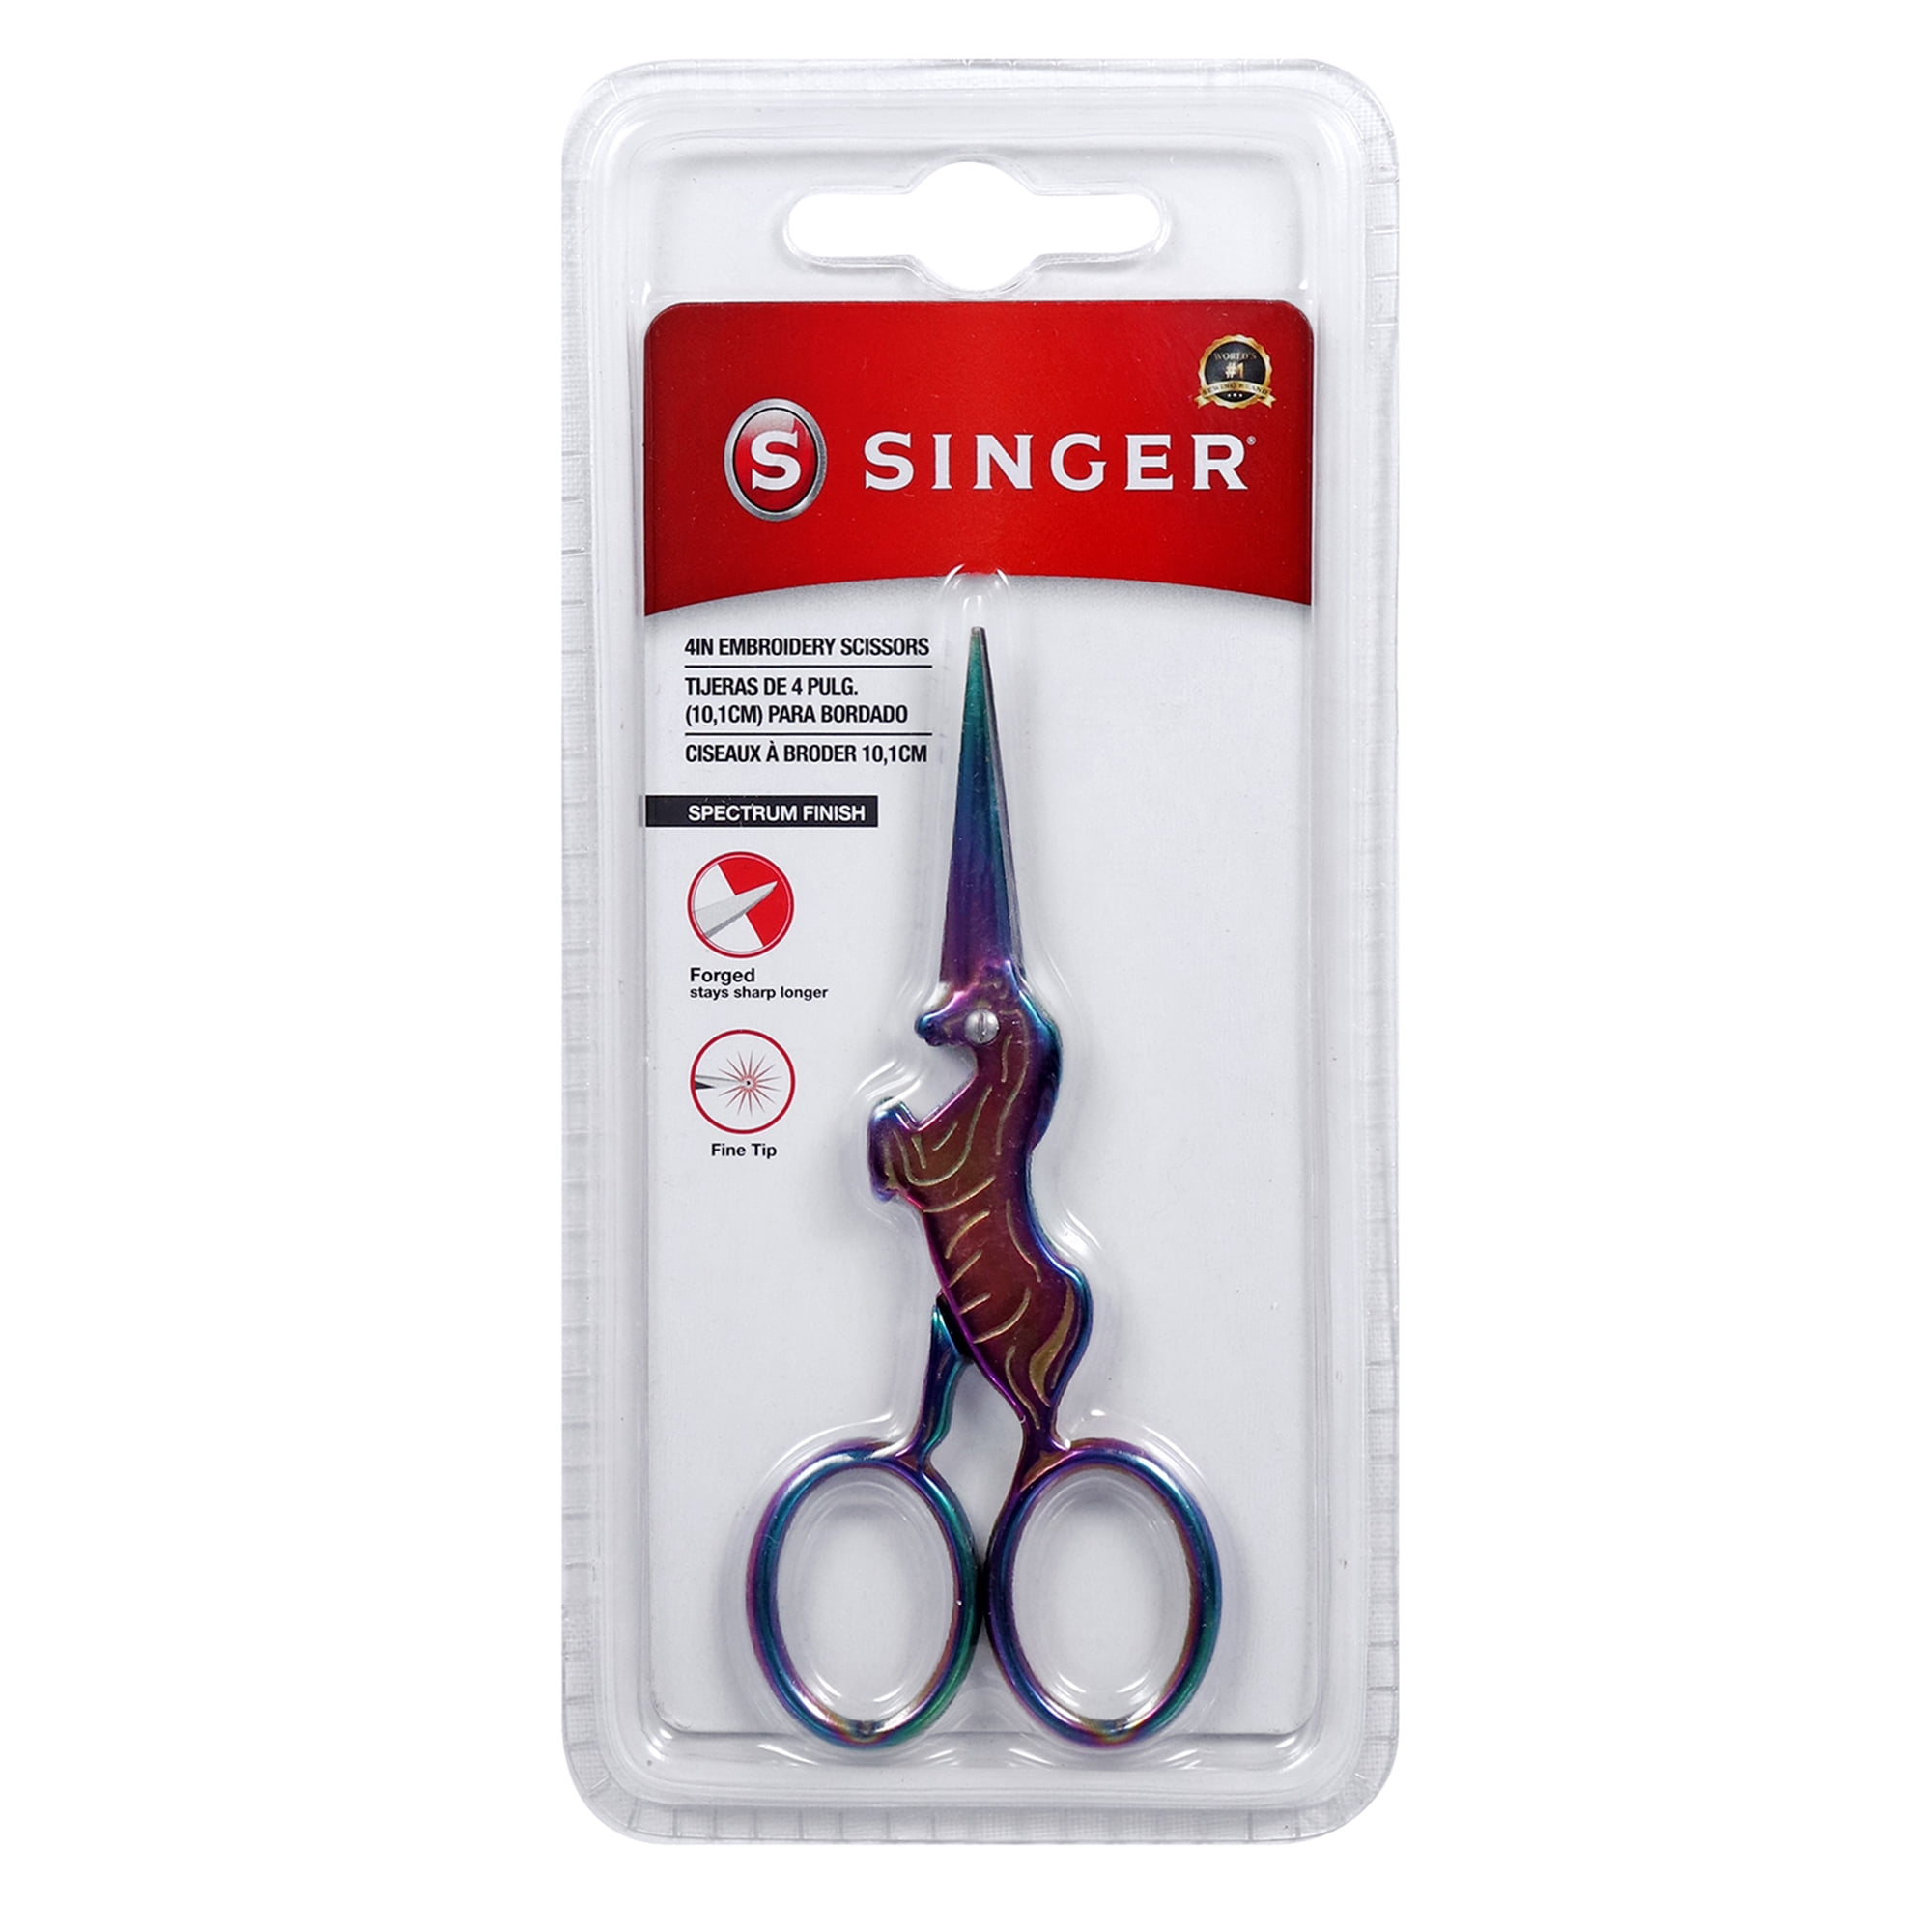 SINGER C812 < Scissors < Accessories - Singer Sewing Machine